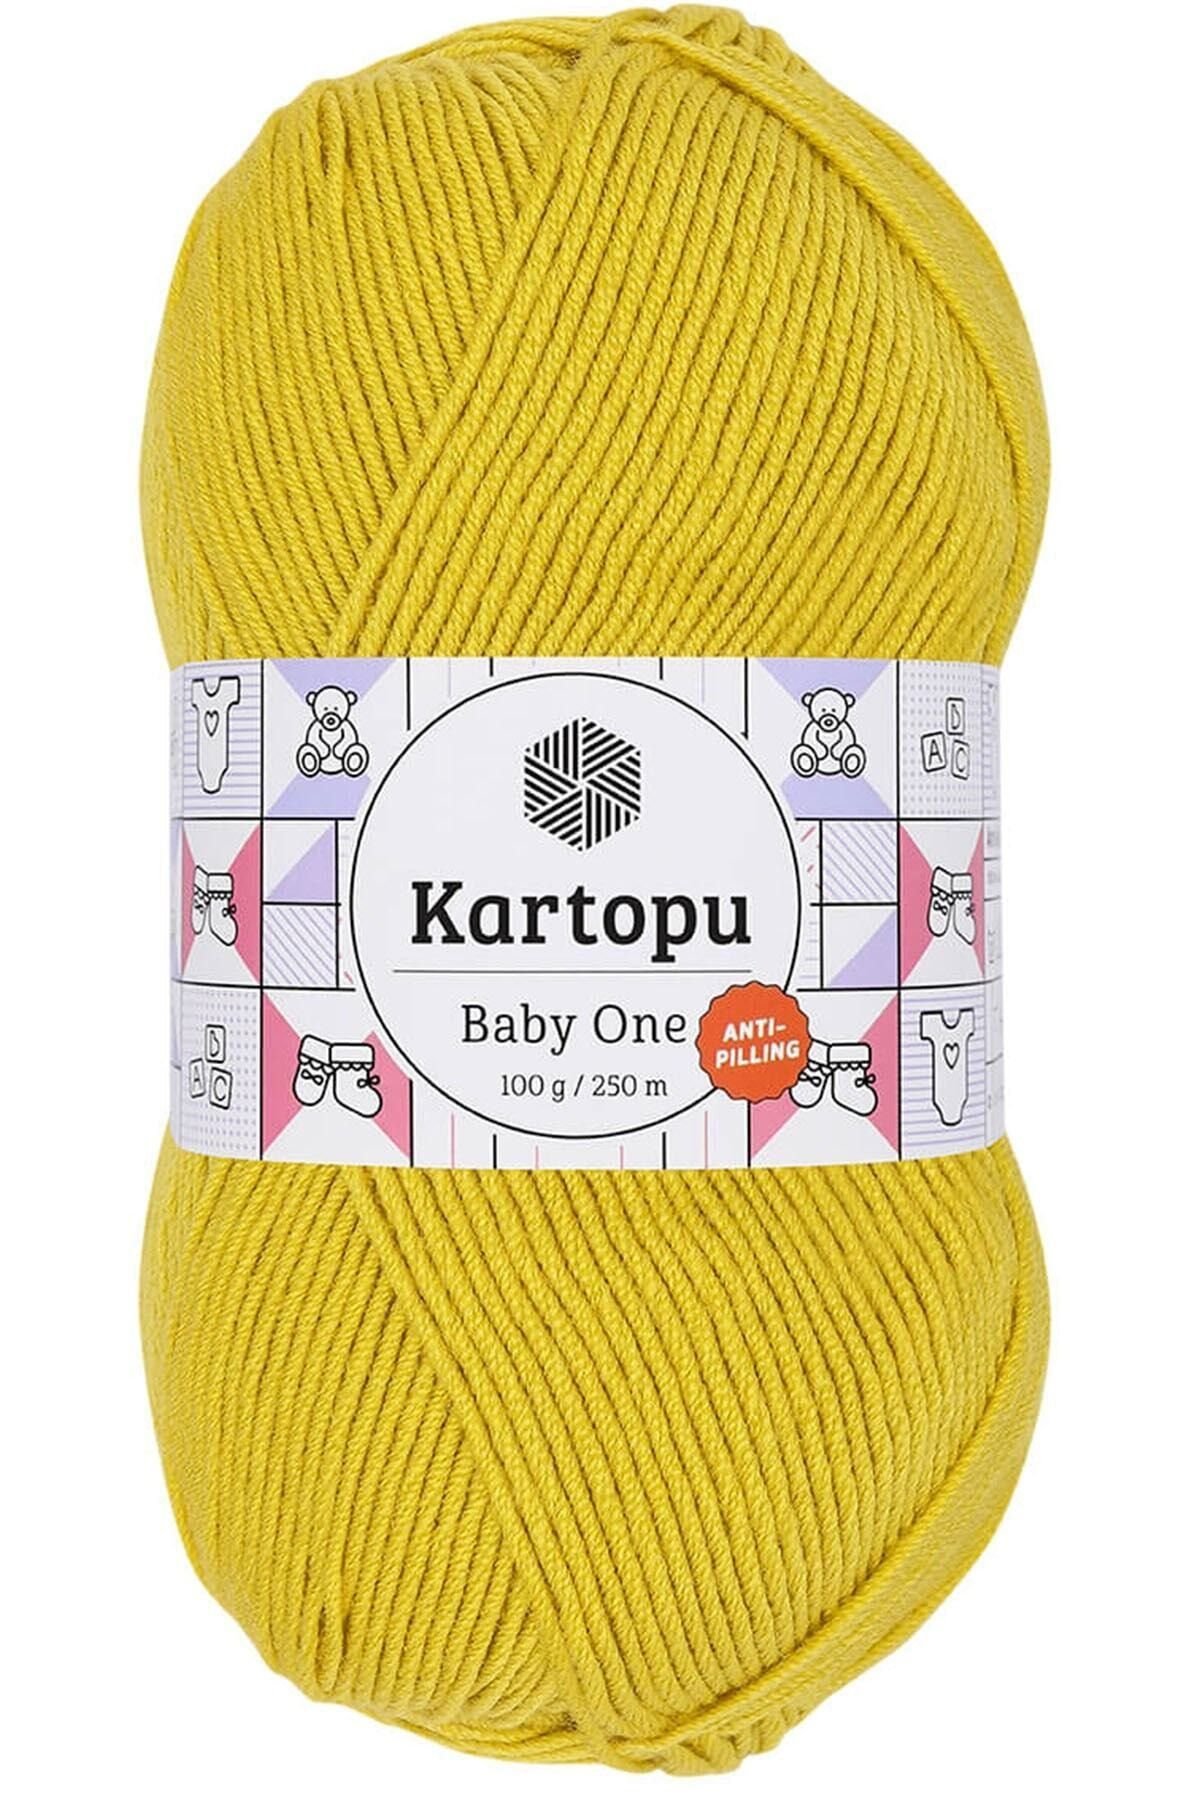 Kartopu Baby One Tüylenmeyen Bebek Yünü Hardal Sarı K1321